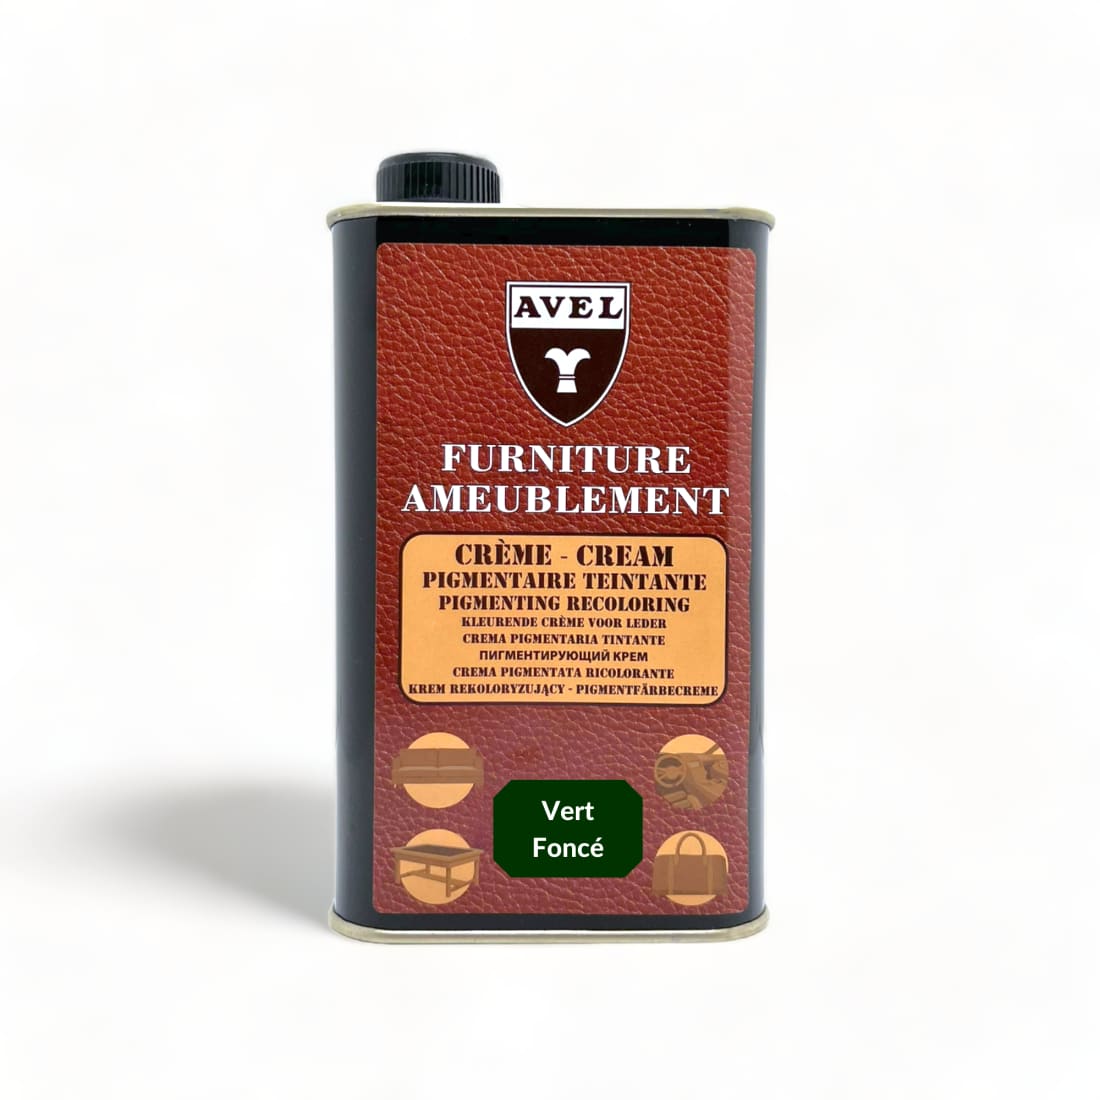 Crème Pigmentaire Teintante Vert Foncé - Avel - 375 ml -